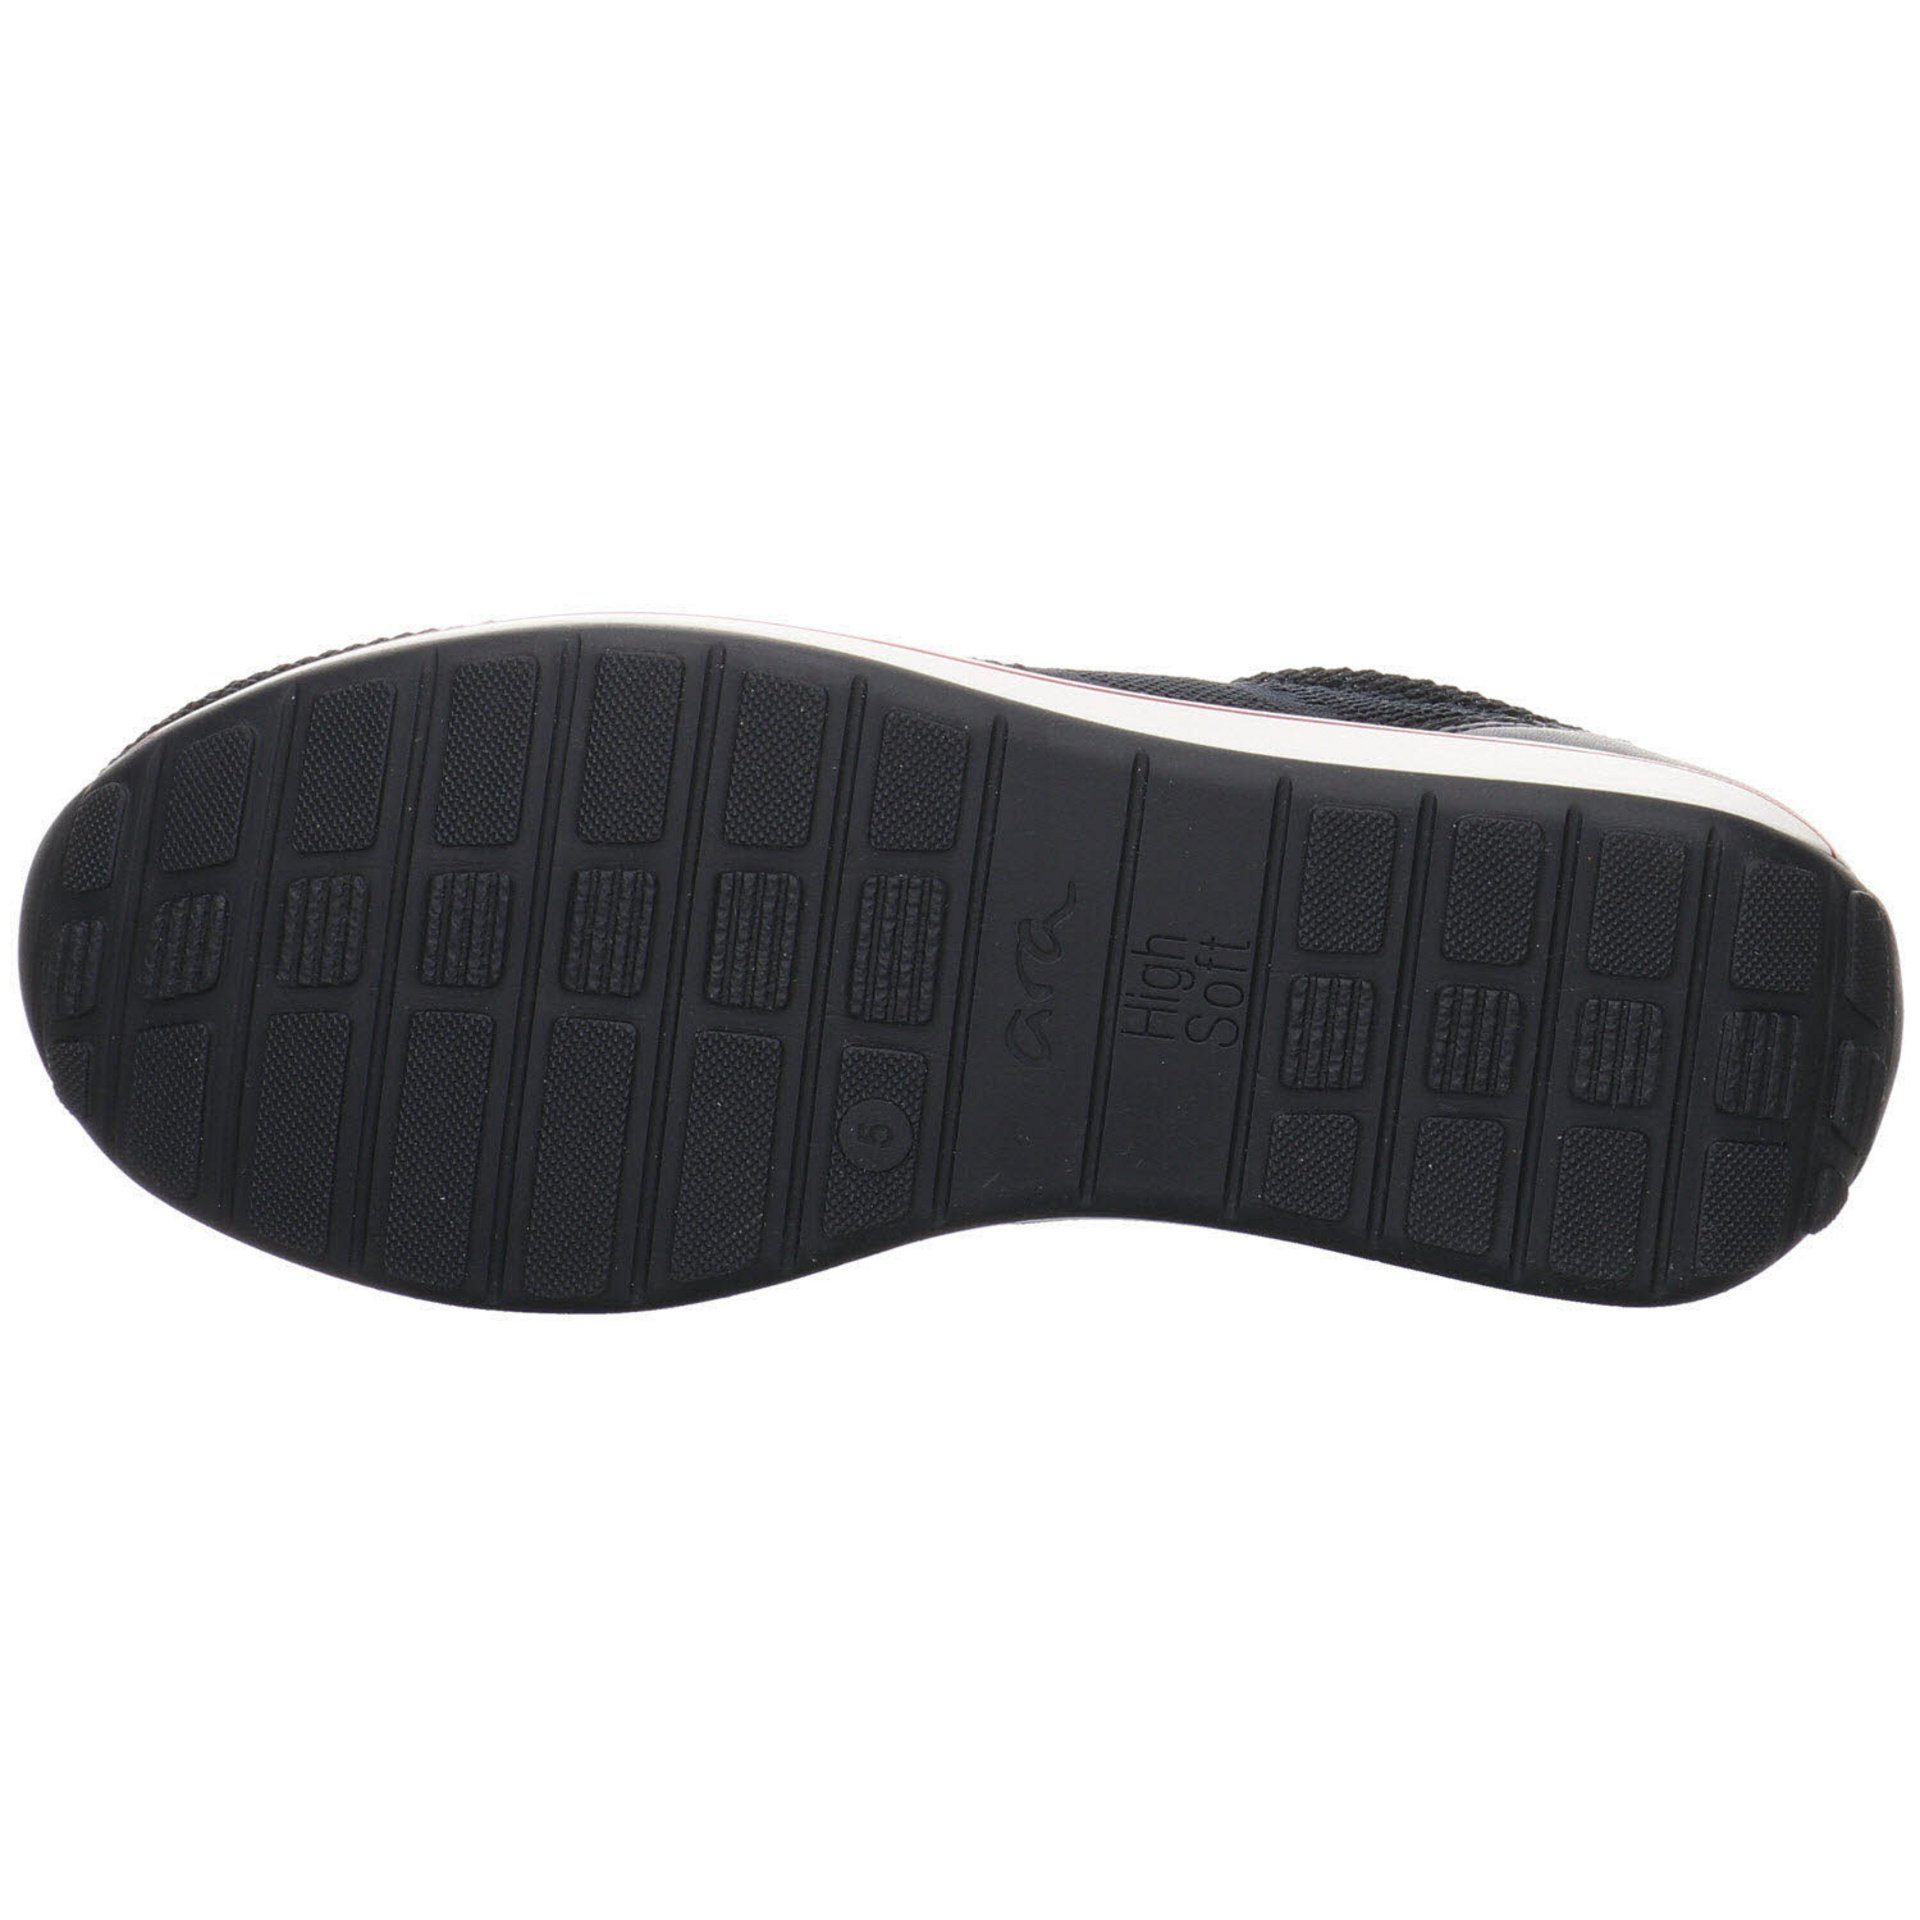 Schnürschuh Sneaker Damen 038818 Ara Leder-/Textilkombination blau Schuhe